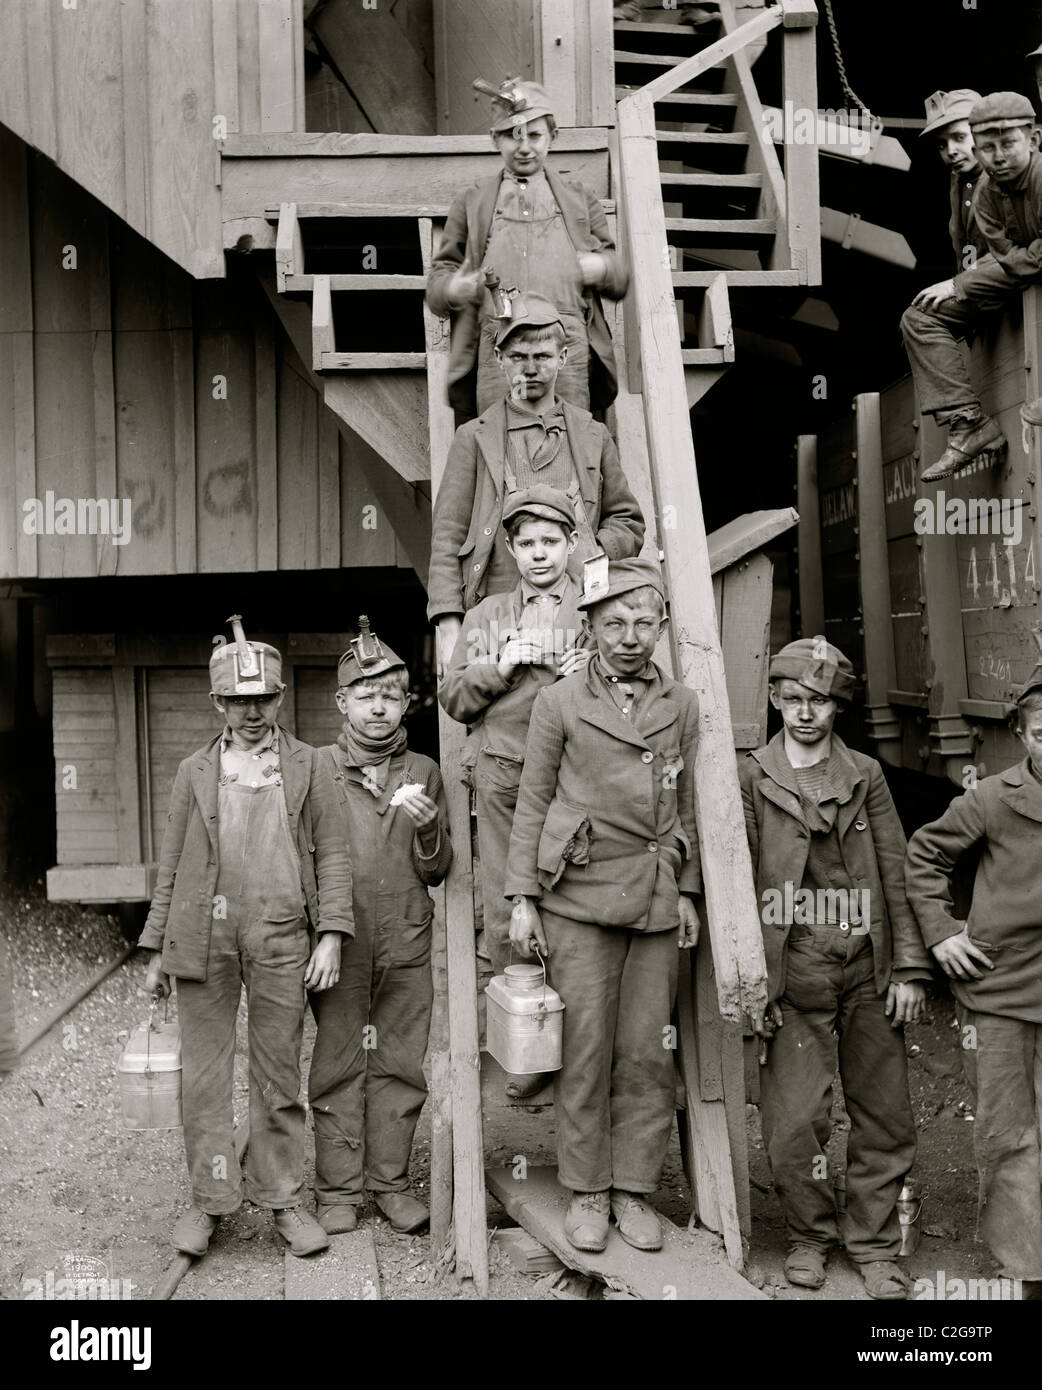 Breaker boys, Woodward coal breakers, Kingston, Pa Stock Photo